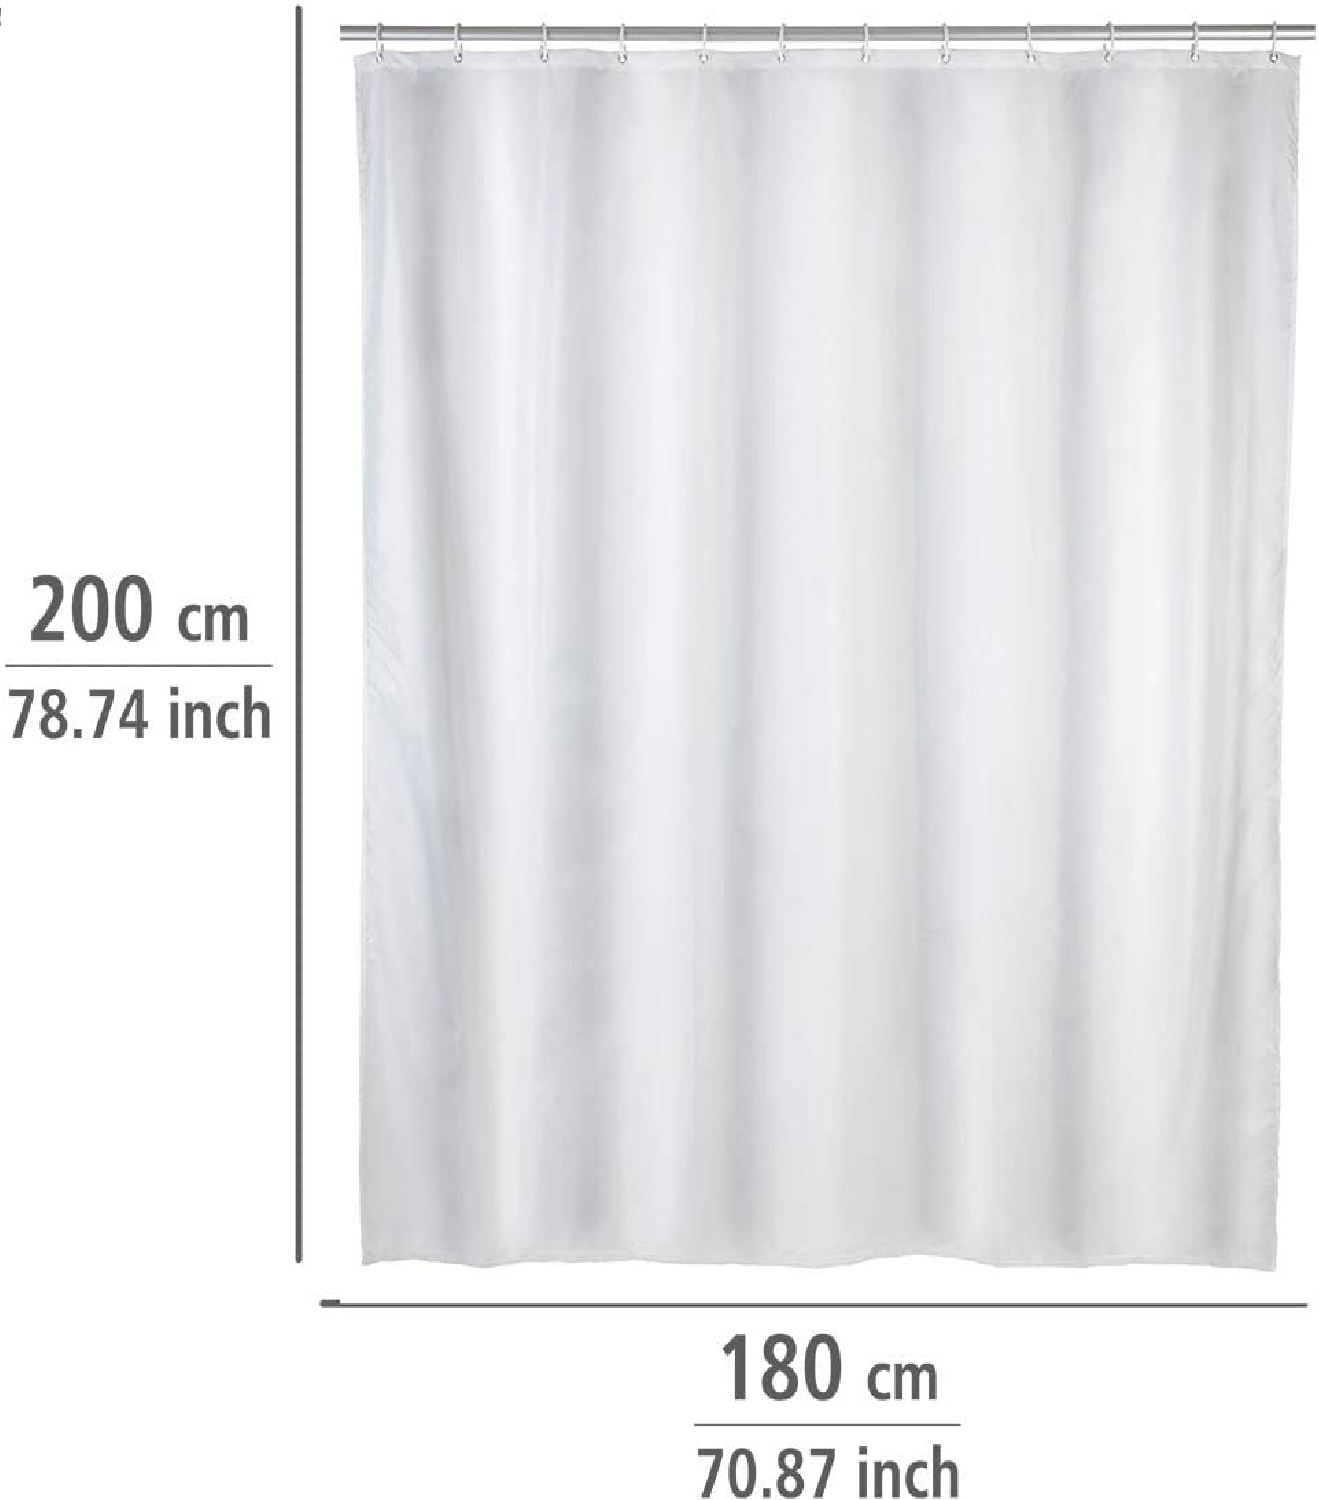 Anti-Schimmel Duschvorhang Uni White - Anti-Bakteriell, Textil, waschbar, wasserabweisend, schimmelresistent, mit 12 Duschvorhangringen, Polyester, 120 x 200 cm, Weiß